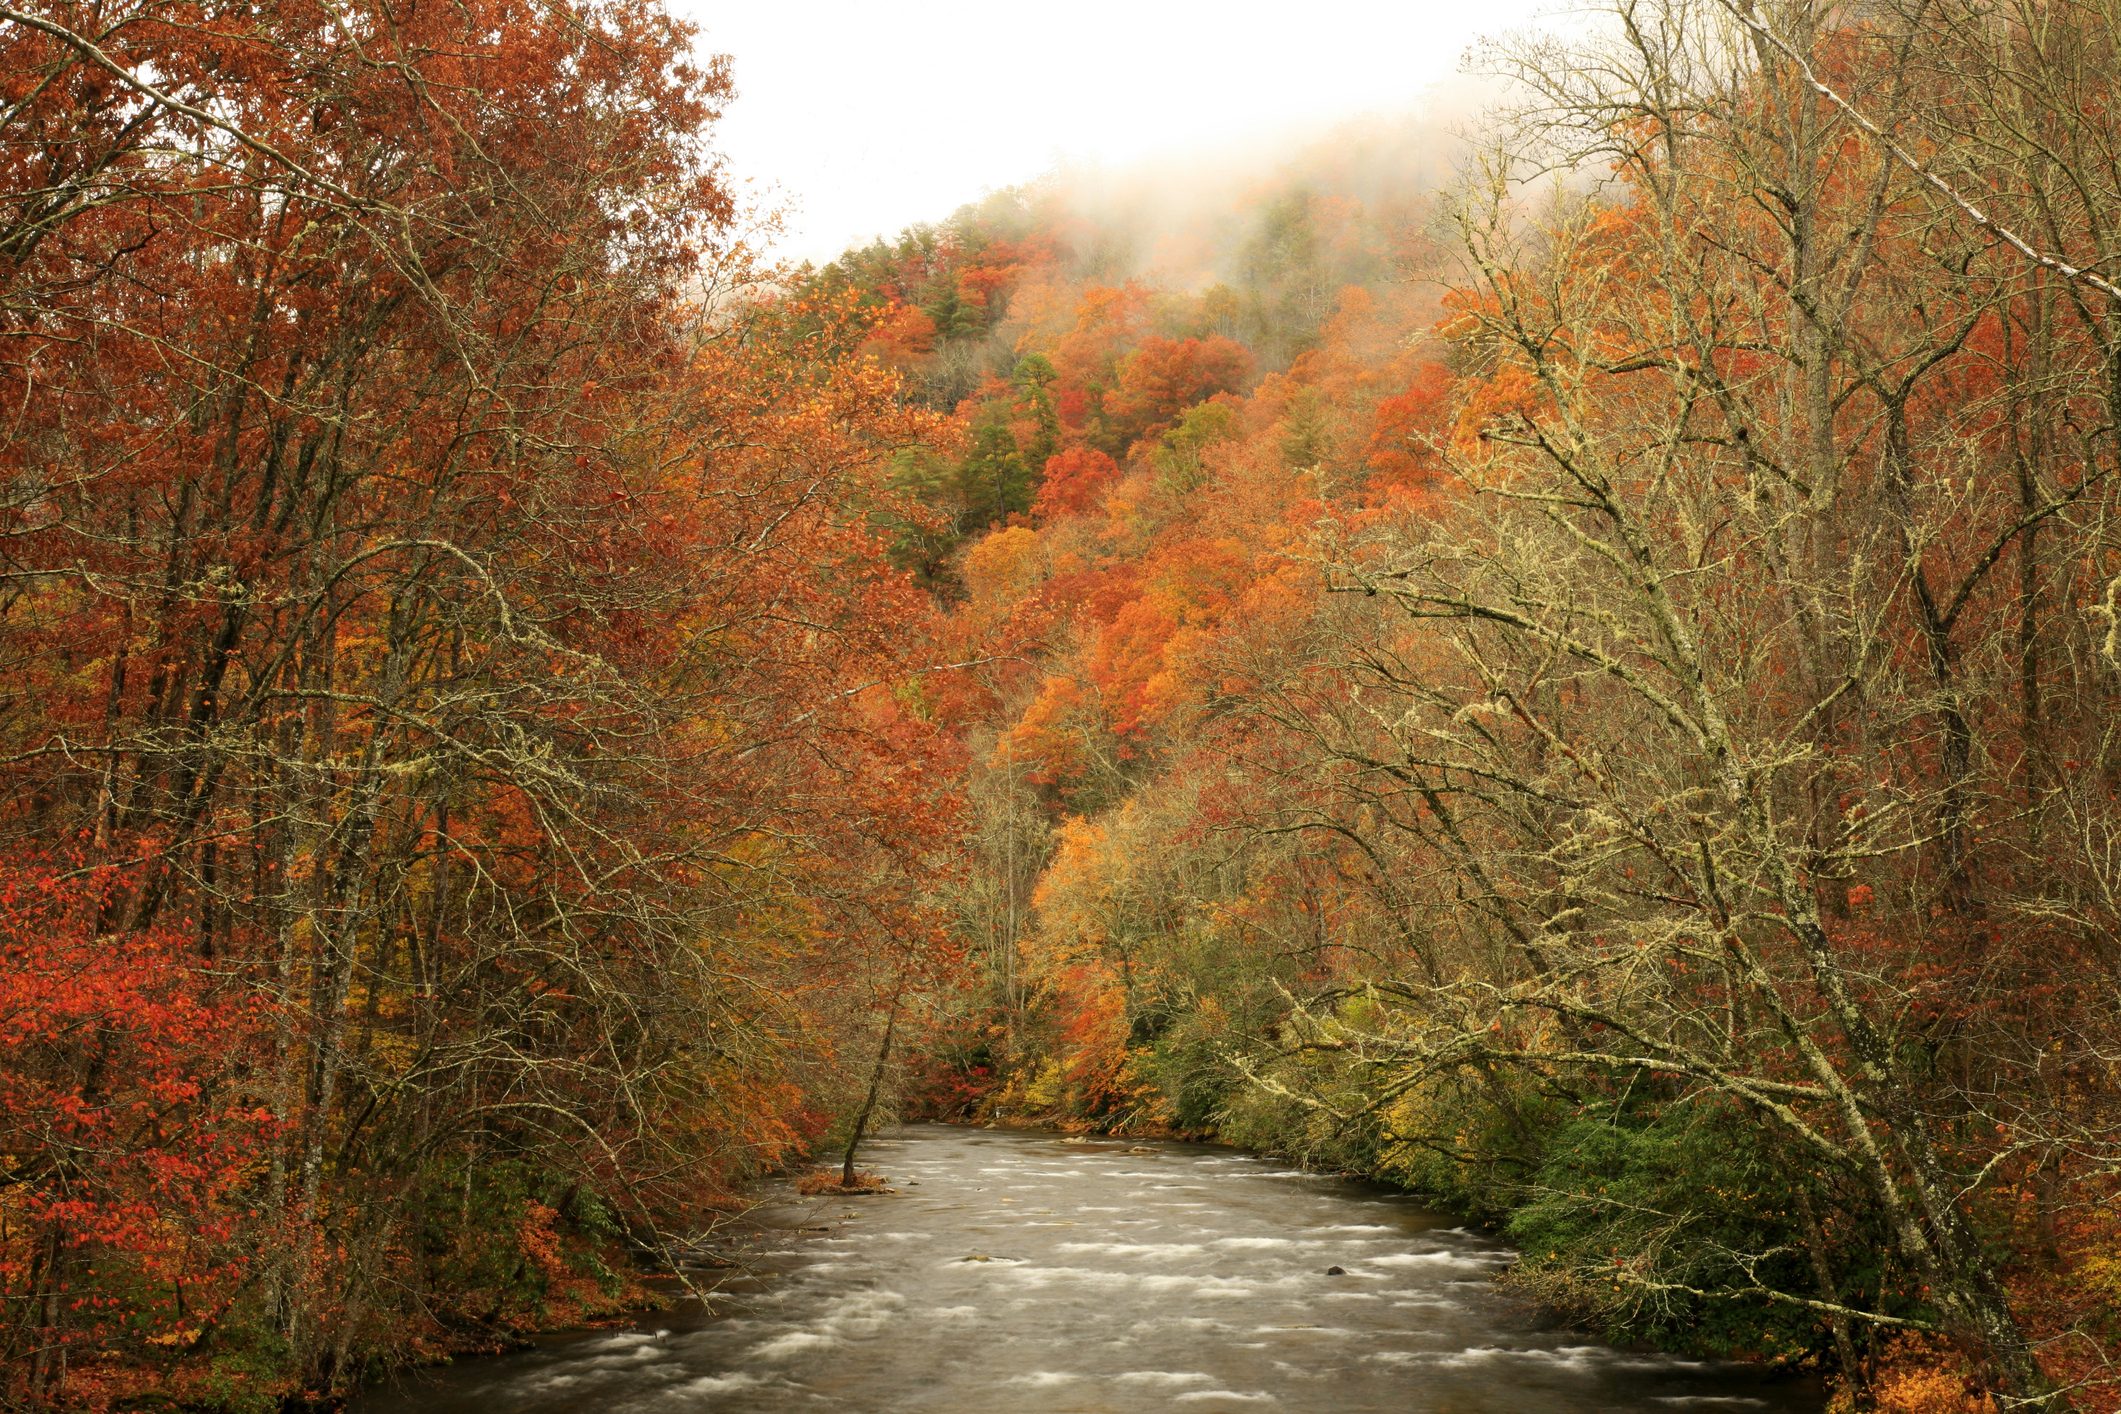 oconaluftee river in autumn